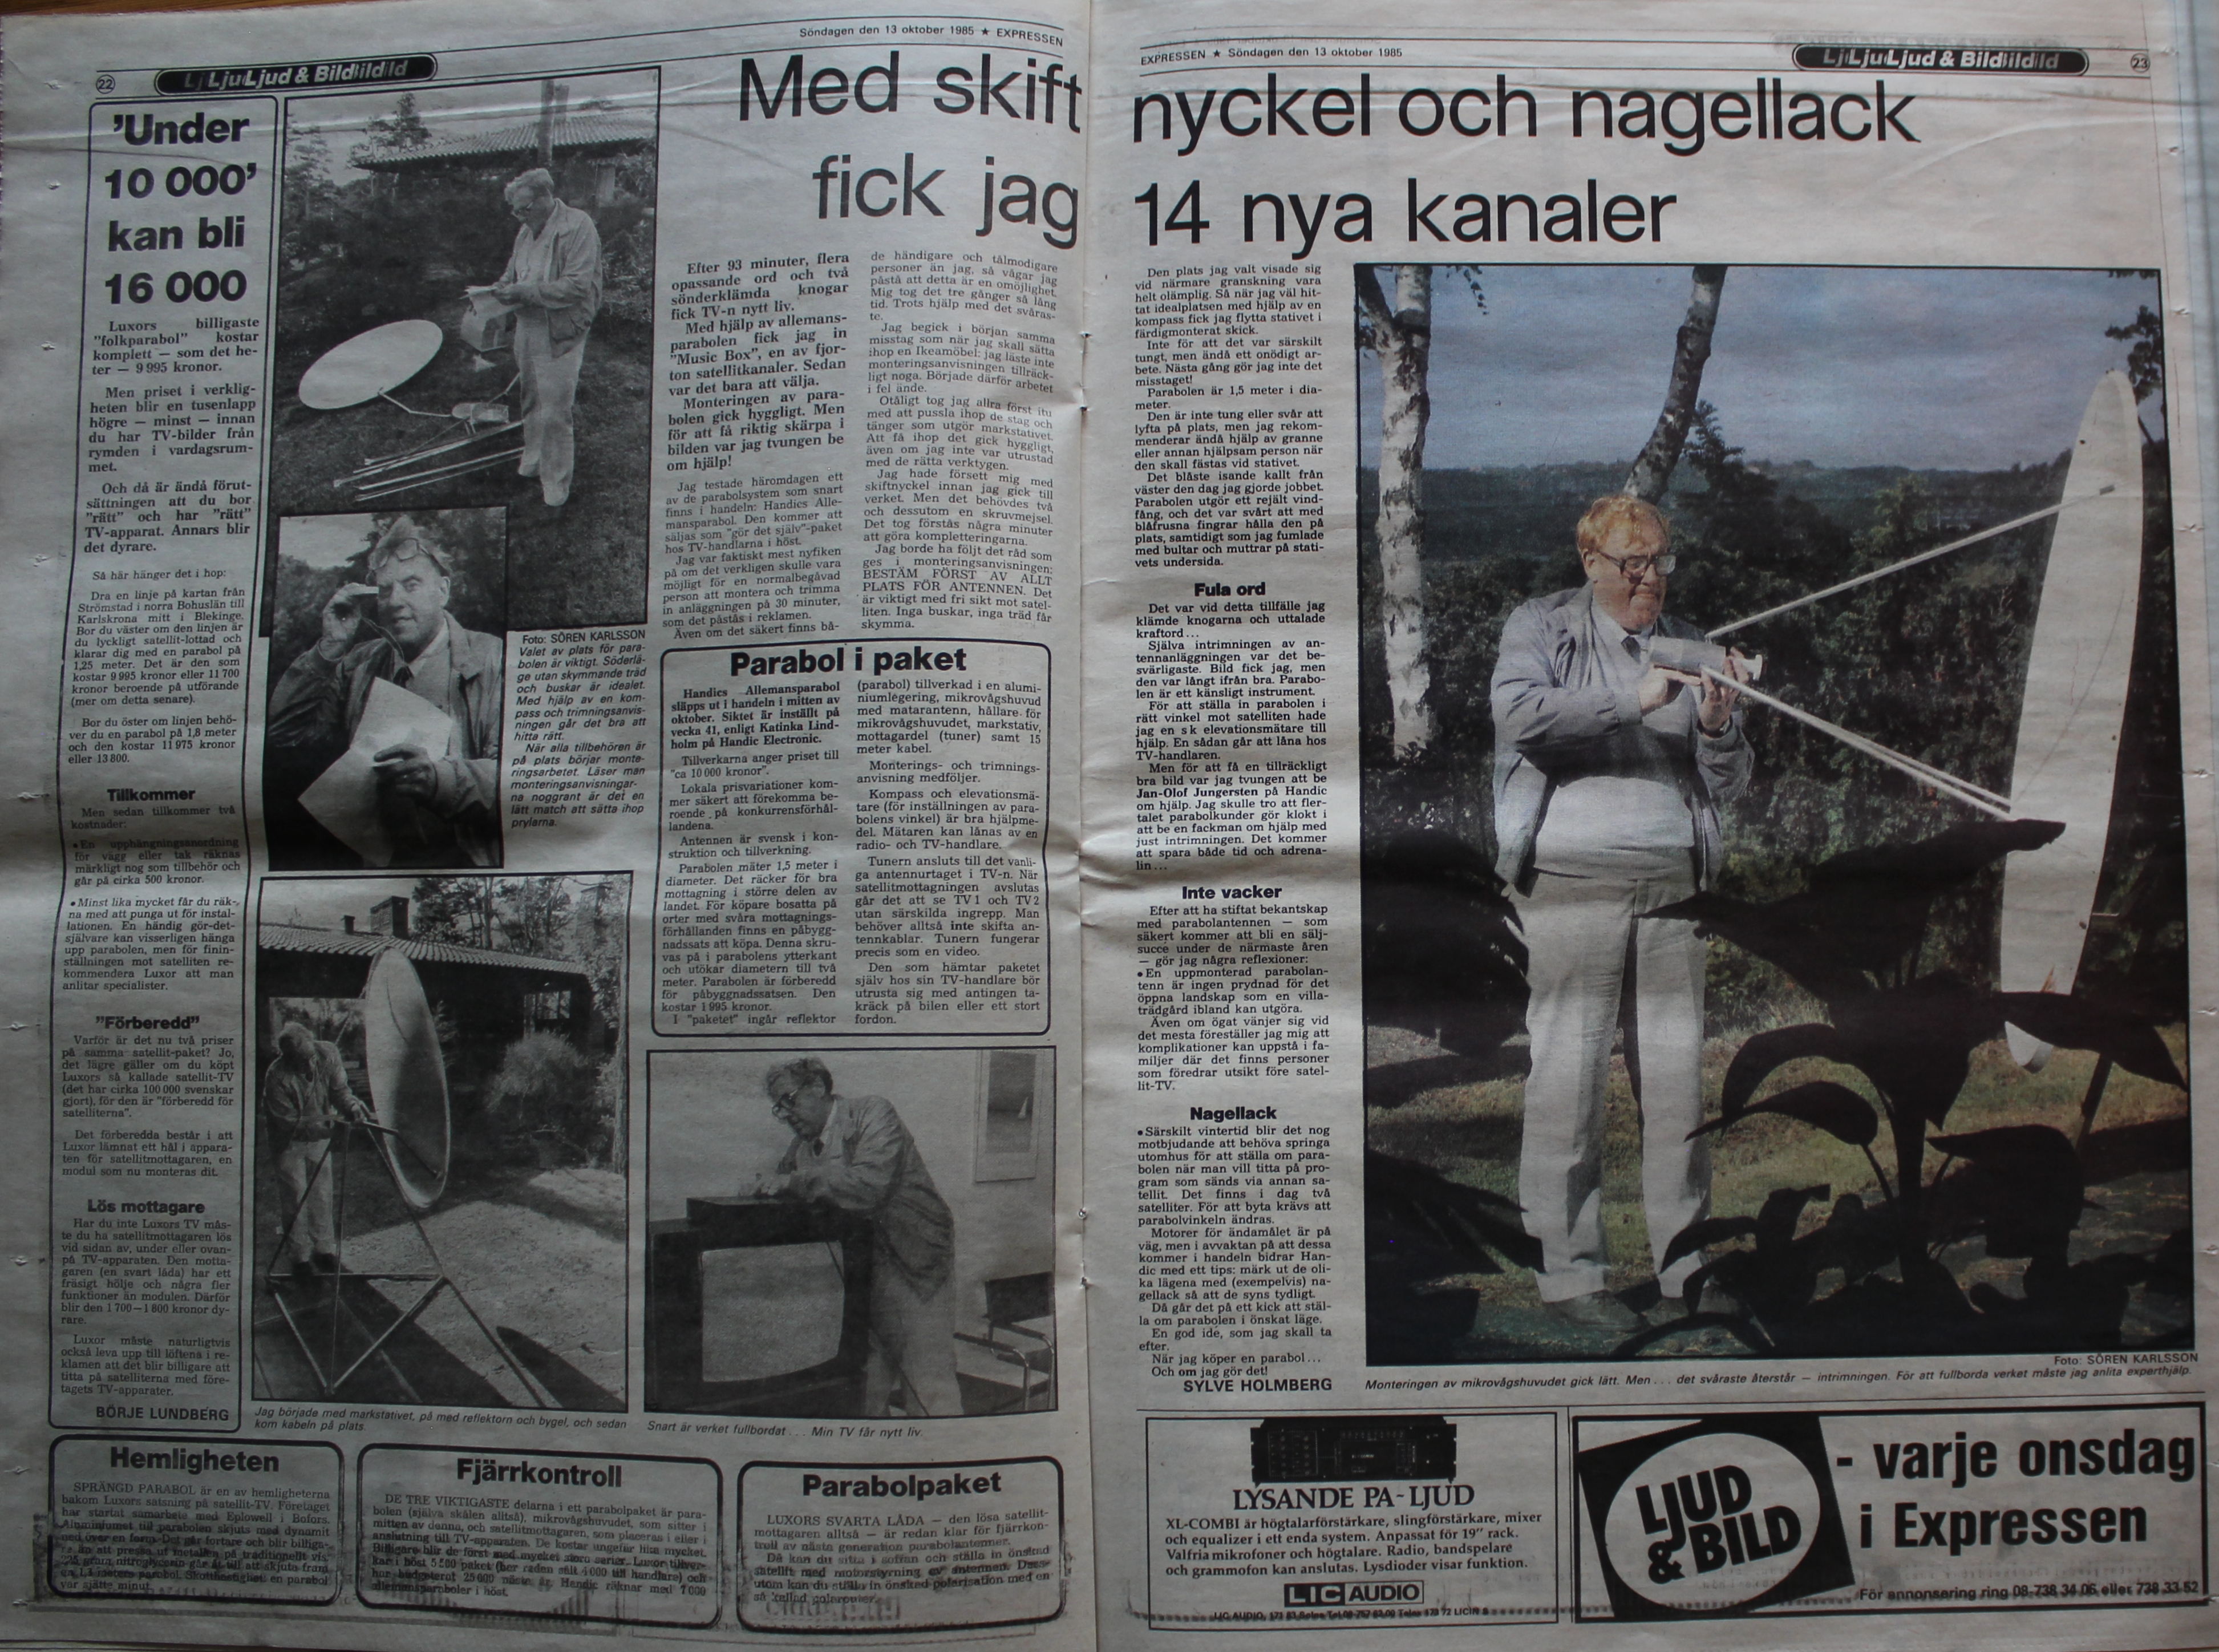 Expressen Ljud & Bild sndagen den 13 oktober 1985 sid 22 och 23